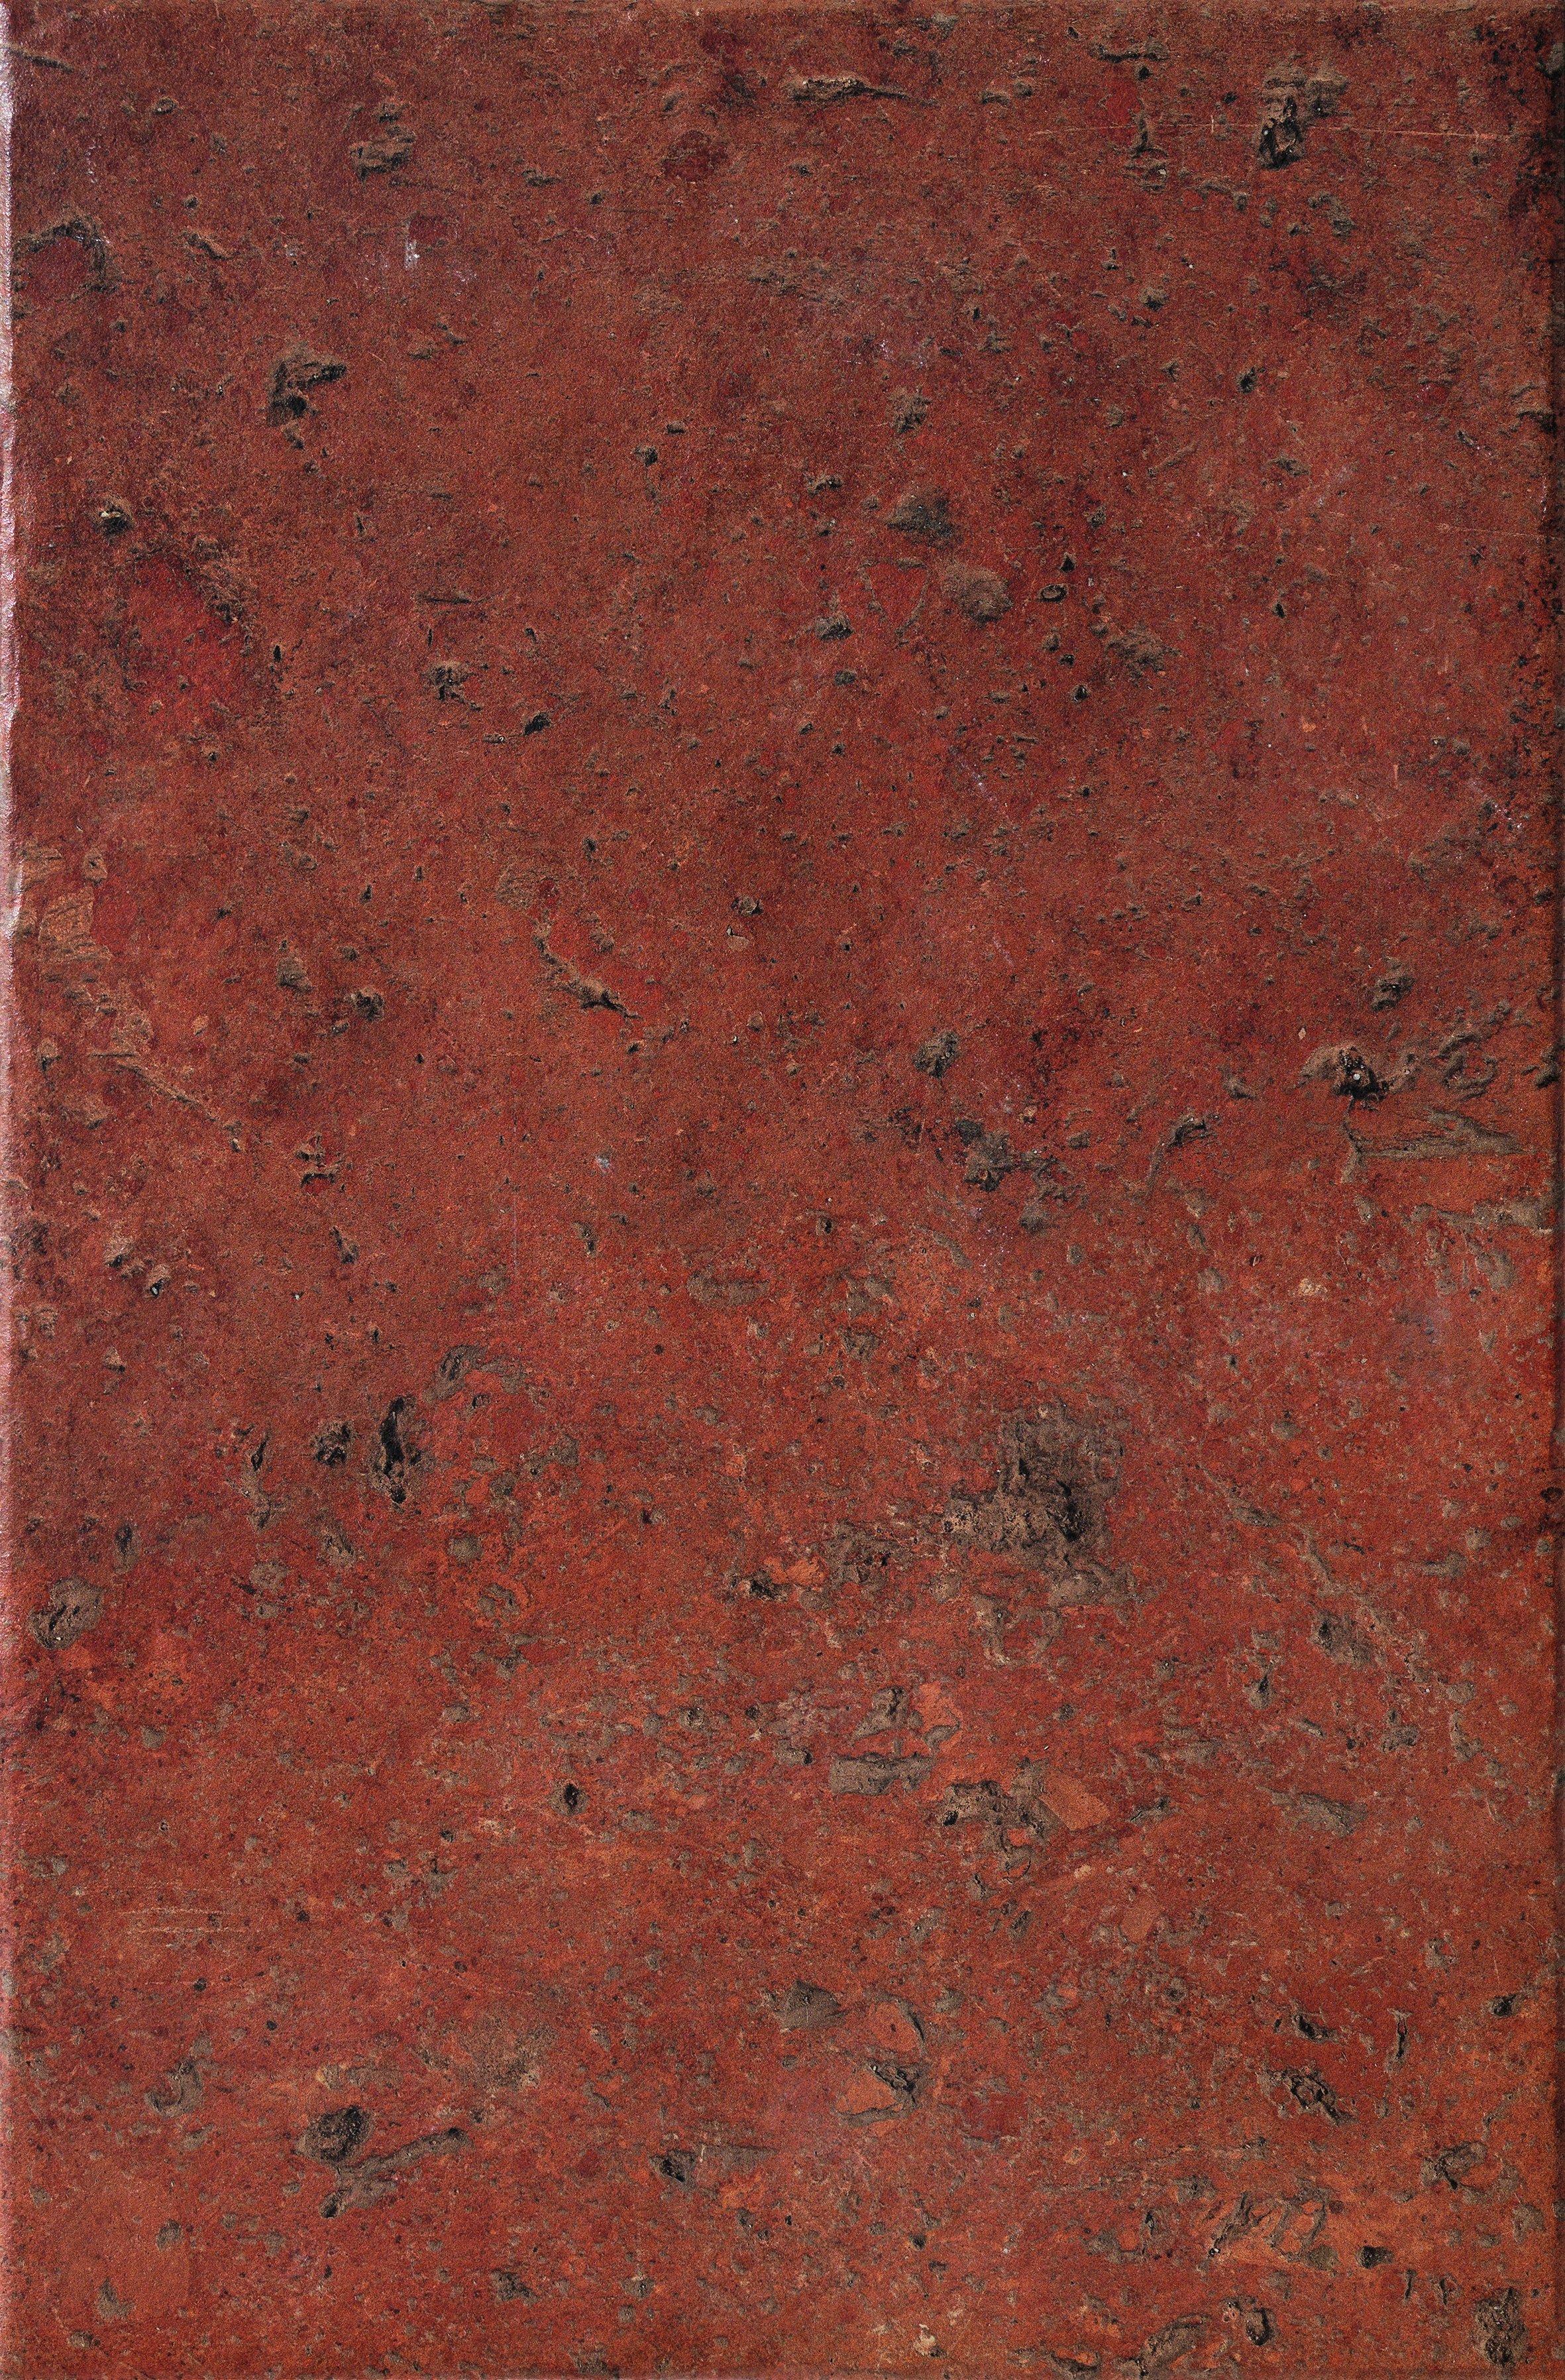 CIR Cotto Del Campiano Rosso Siena Naturale 1080368 40x60,8cm 10mm